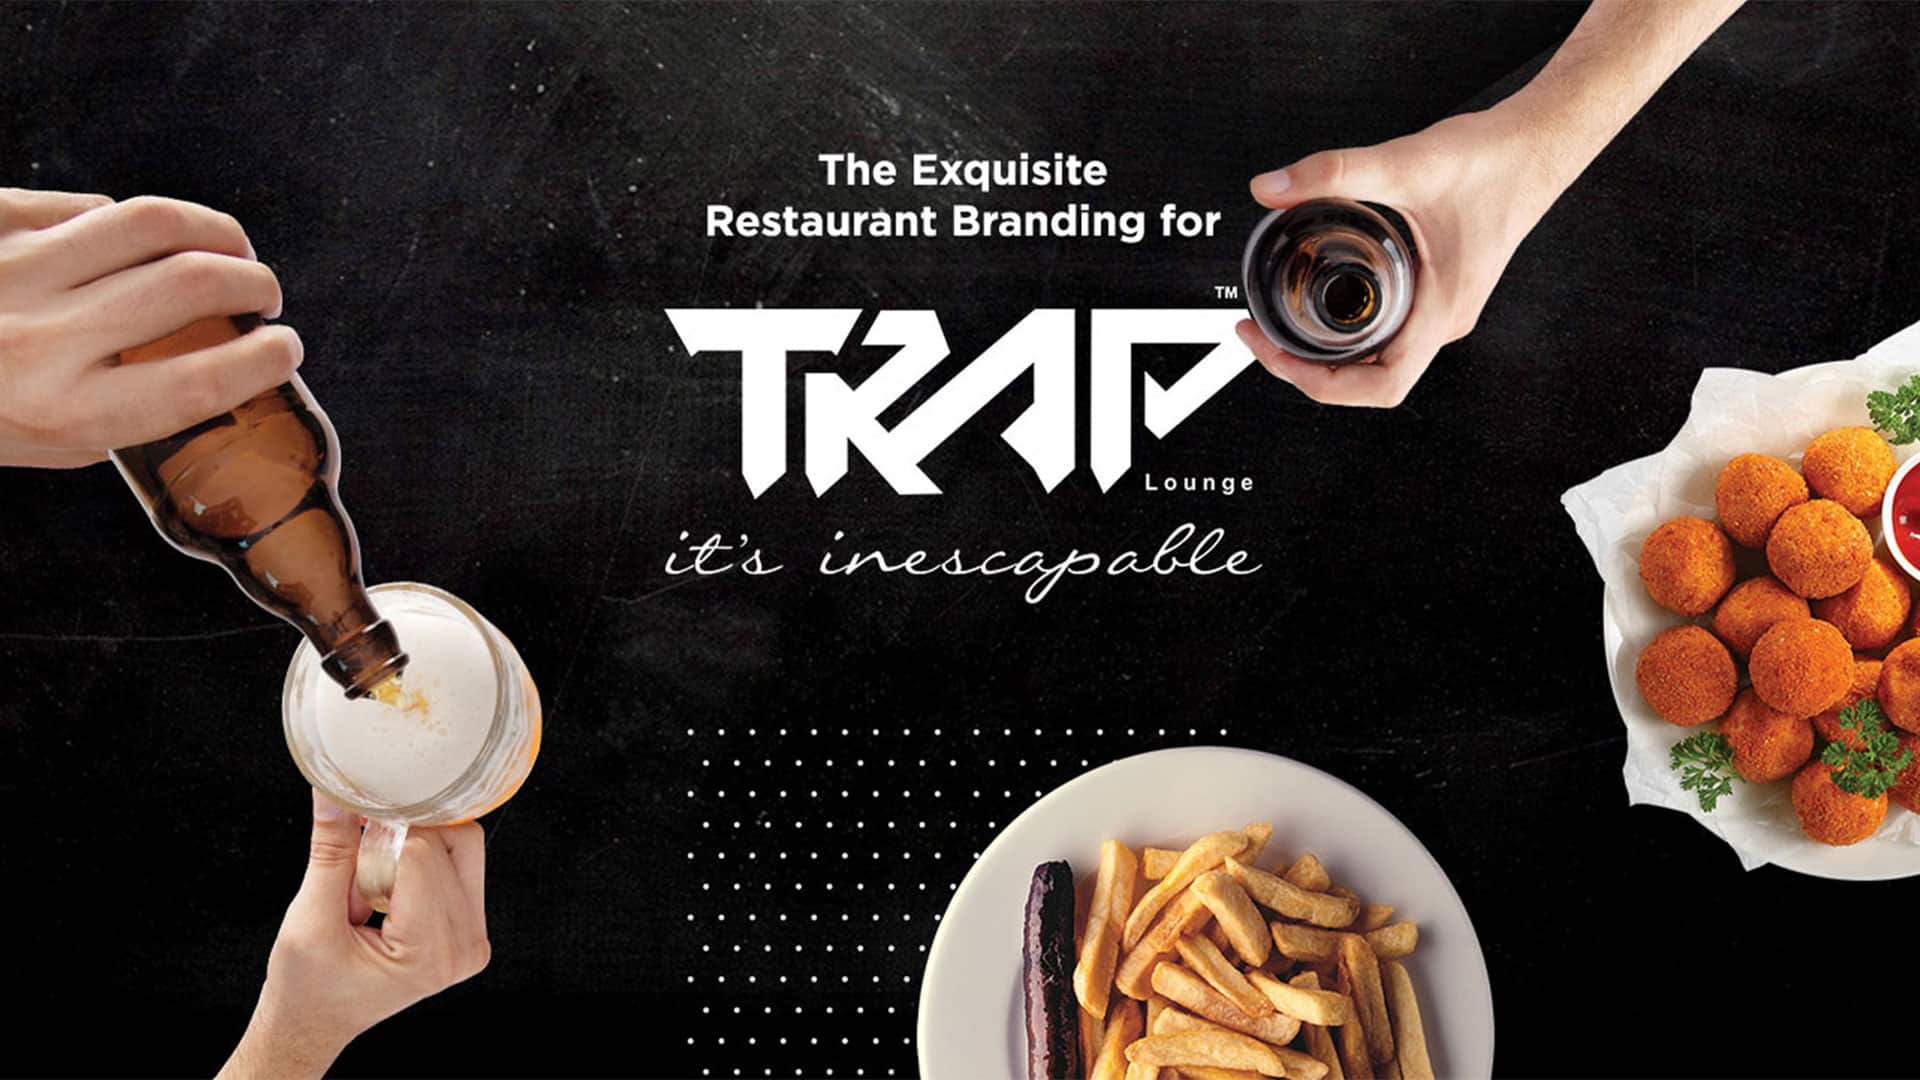 social media marketing companies for restaurants